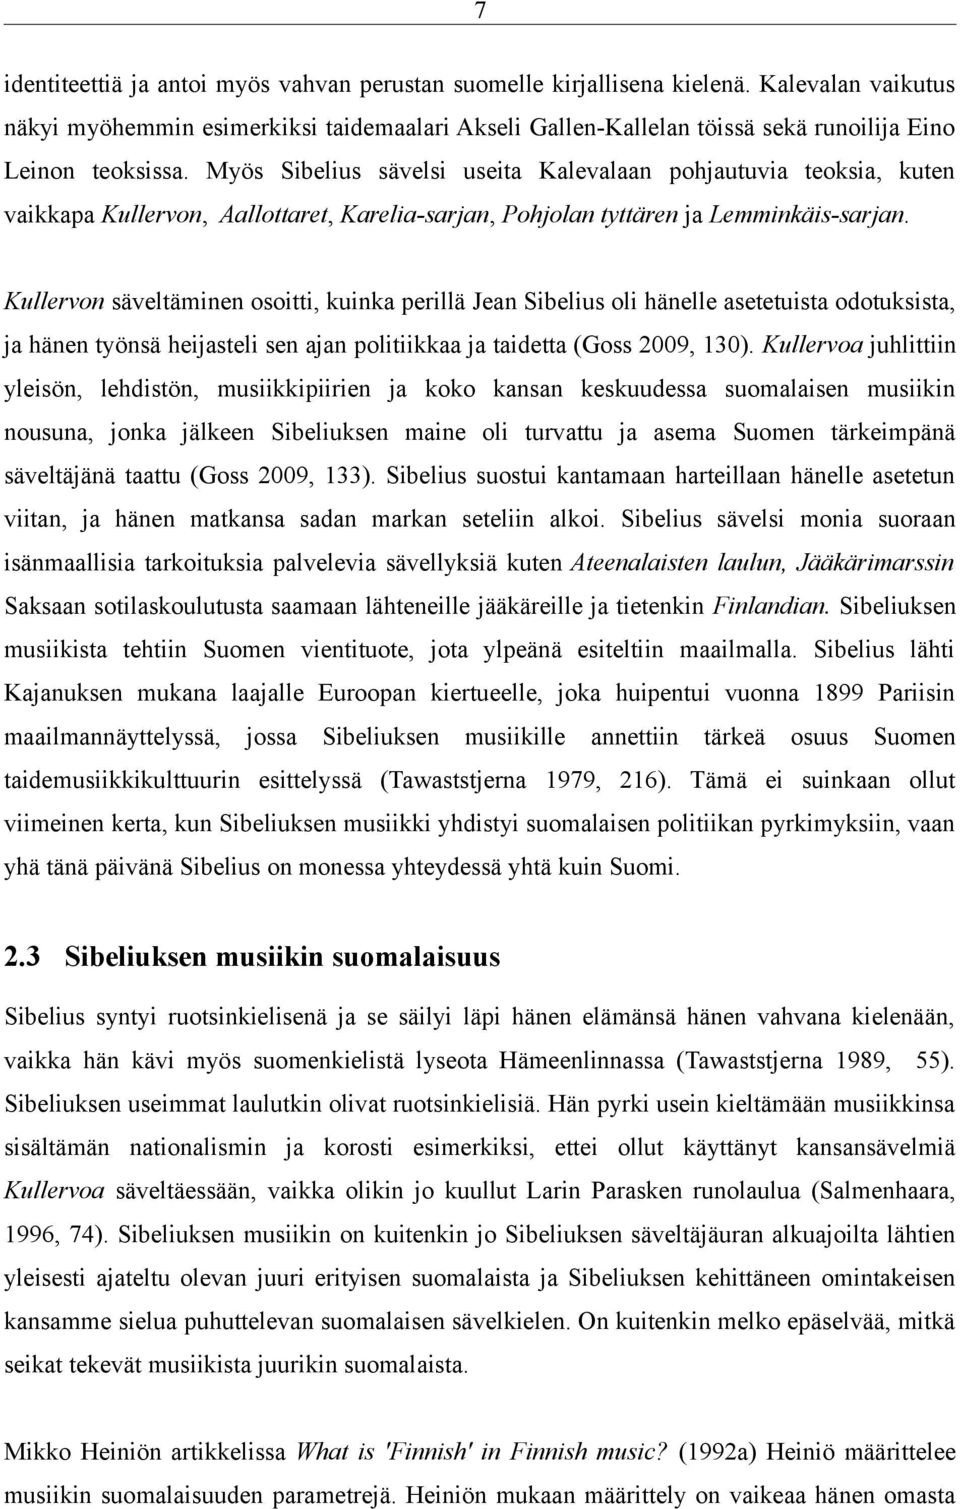 Myös Sibelius sävelsi useita Kalevalaan pohjautuvia teoksia, kuten vaikkapa Kullervon, Aallottaret, Karelia-sarjan, Pohjolan tyttären ja Lemminkäis-sarjan.